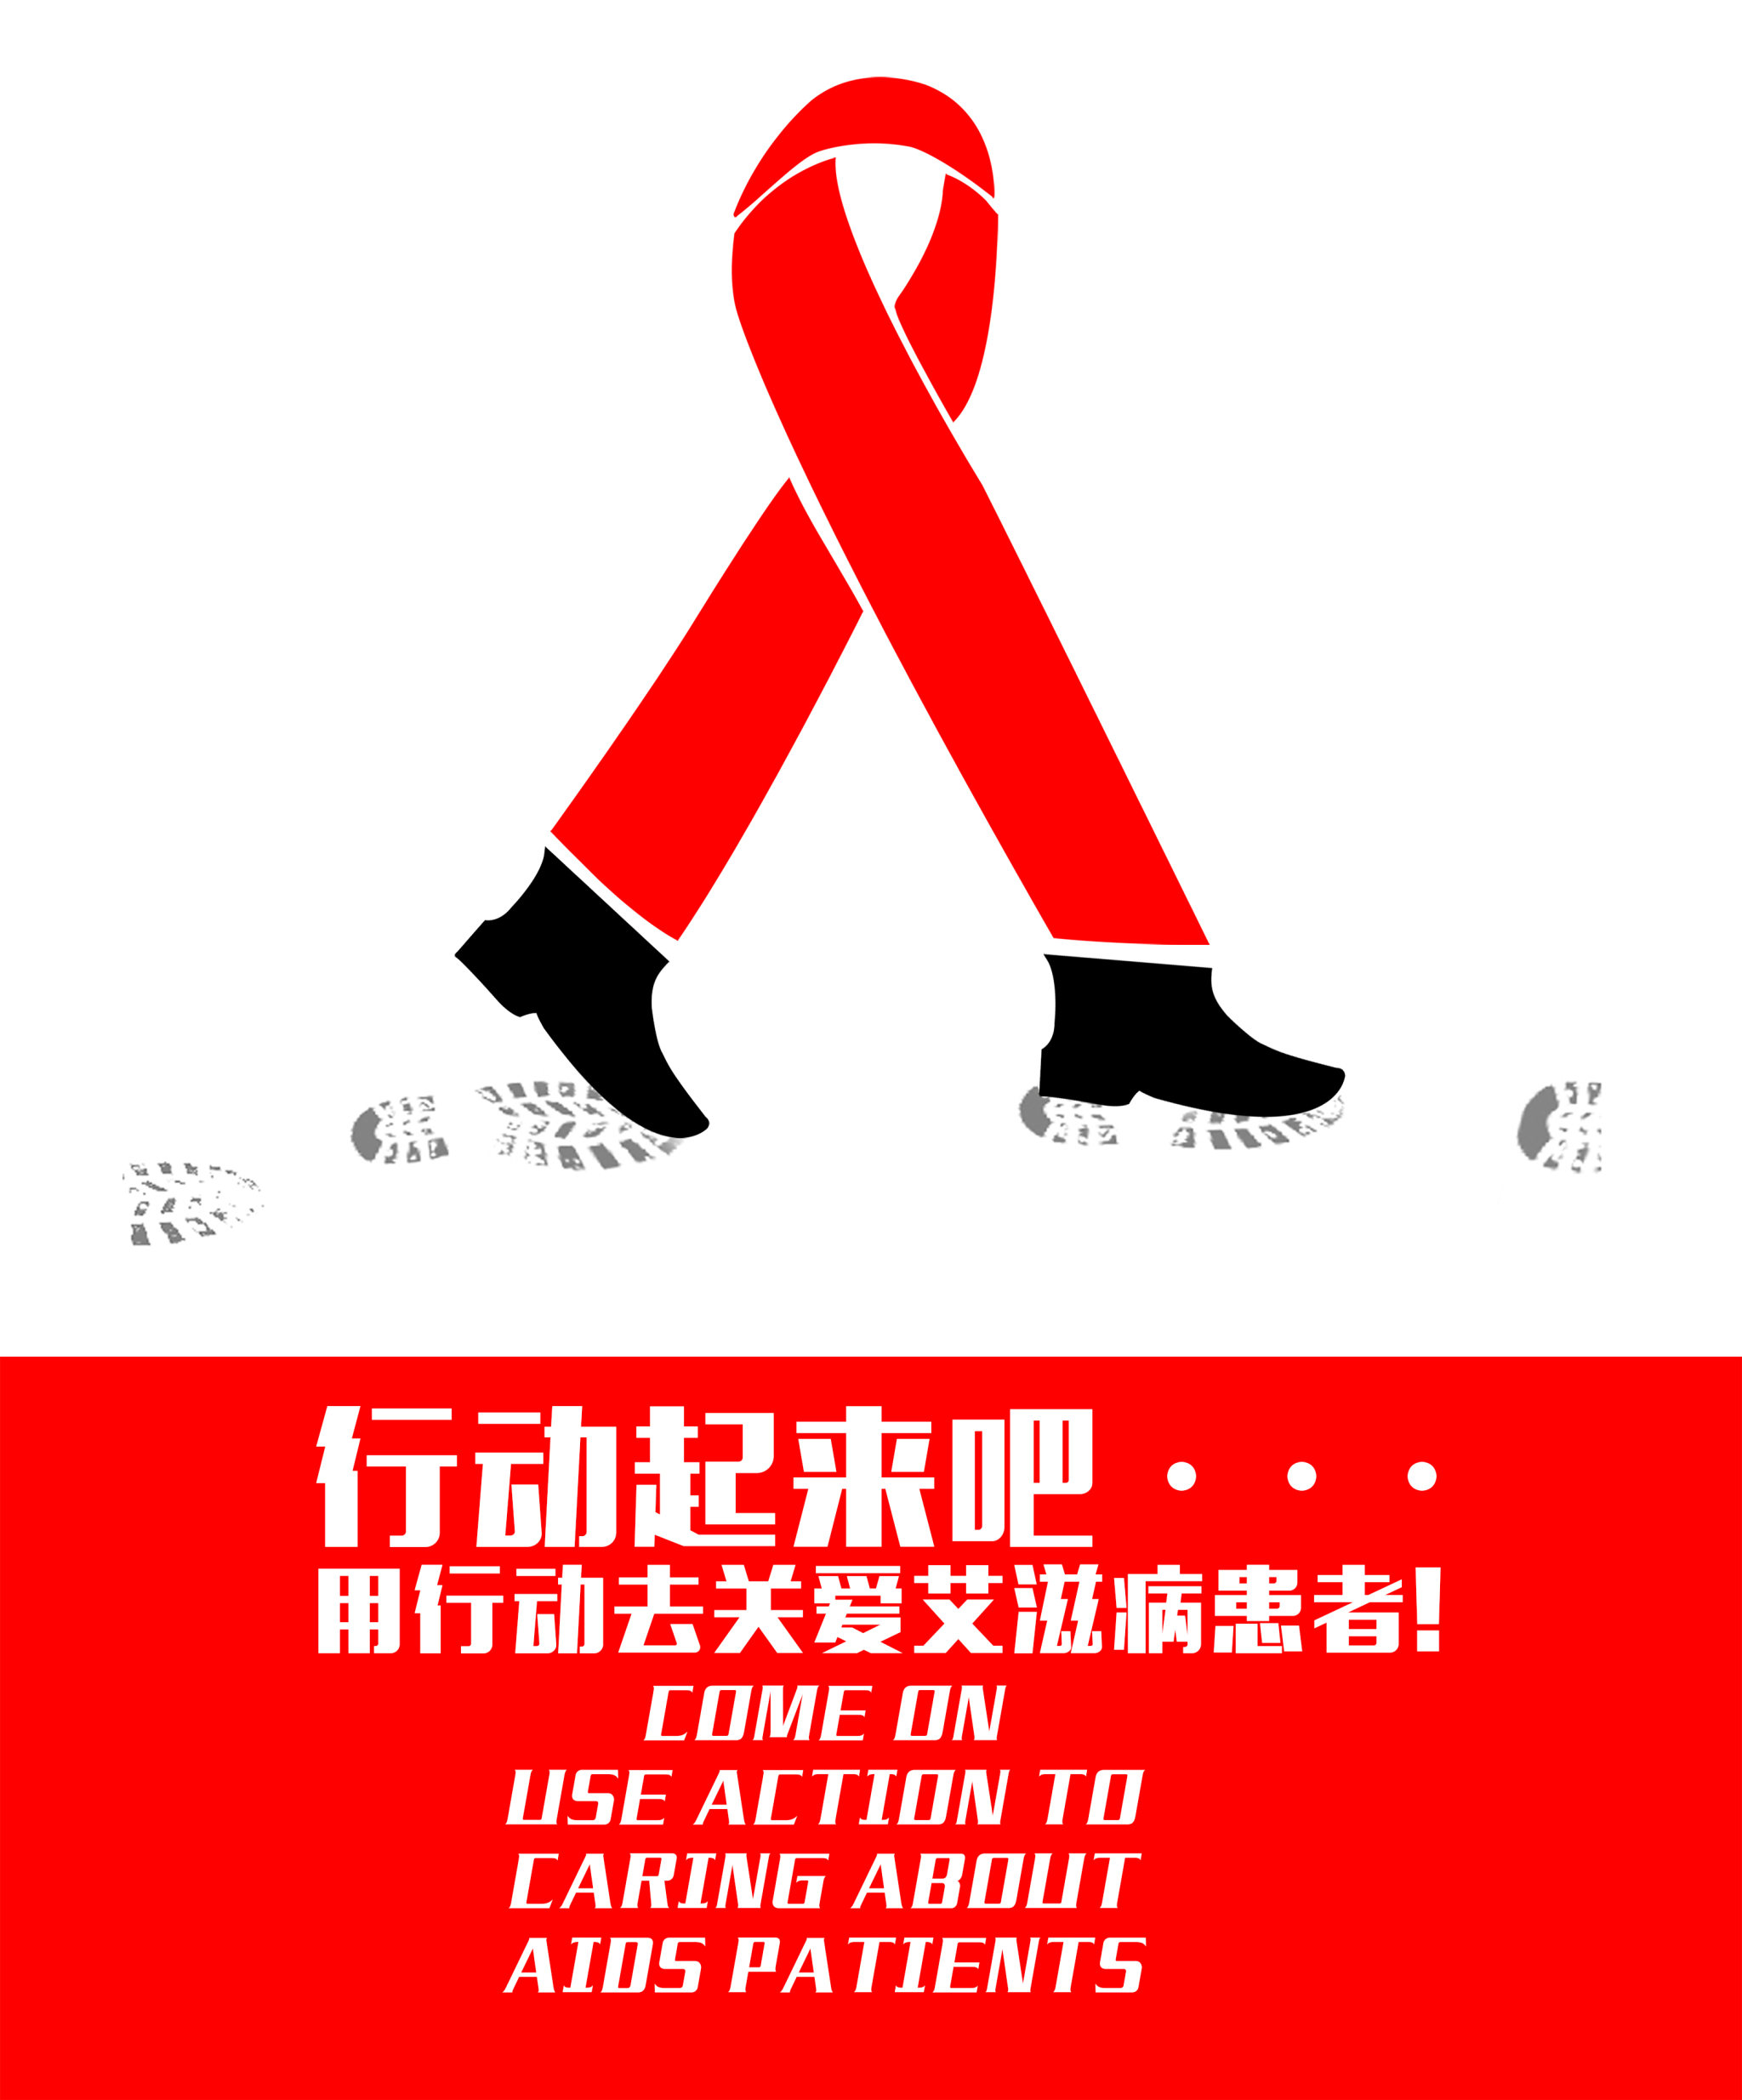 行动起来,用行动关爱艾滋病患者!